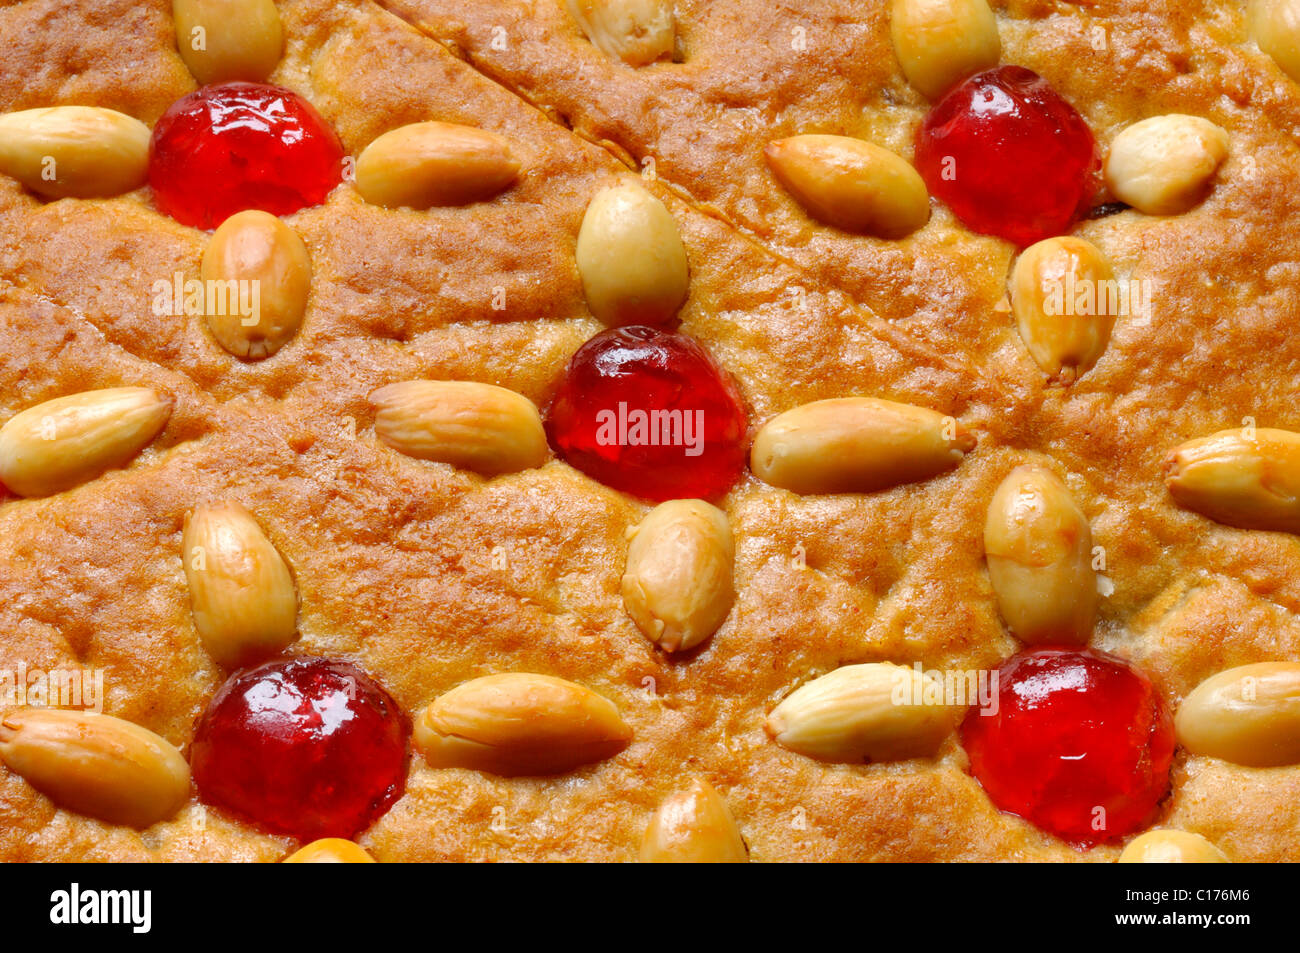 Honey cake with almonds and Maraschino cherries Stock Photo